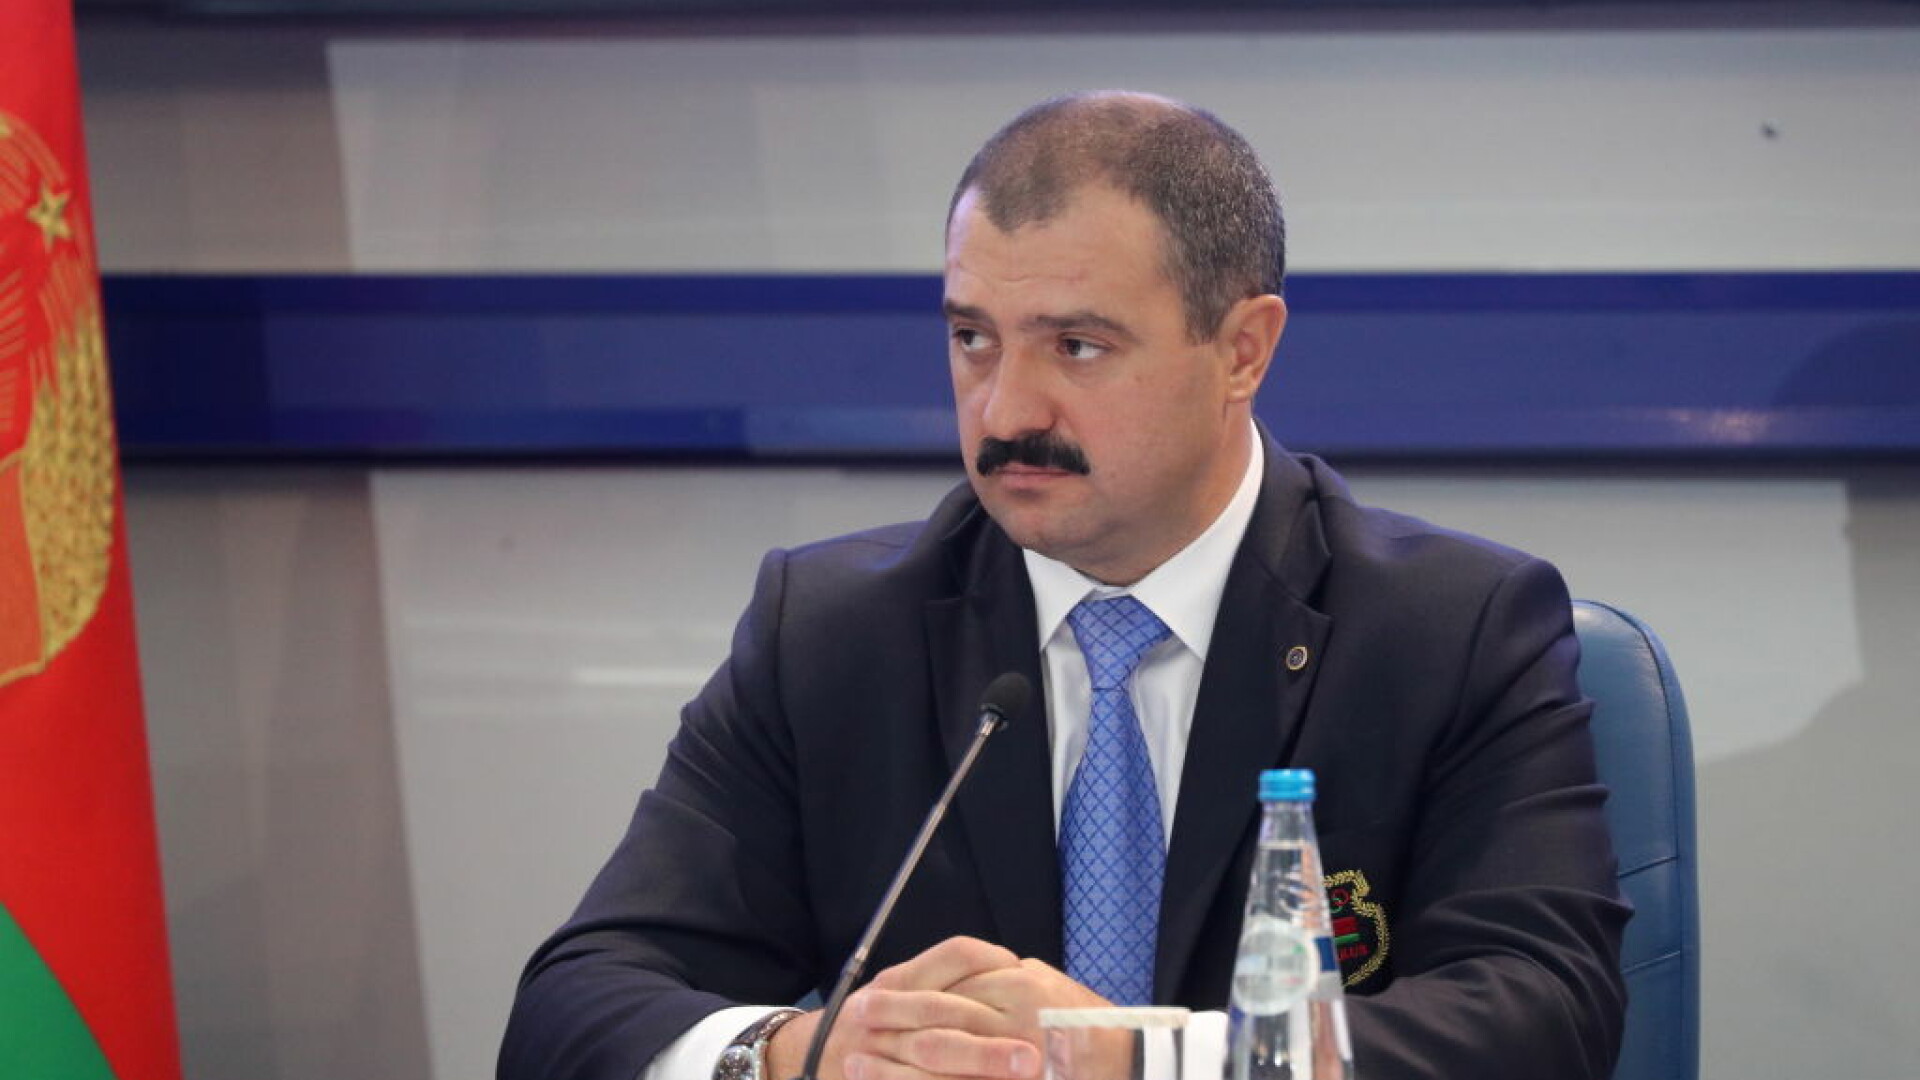 Aleksandr Lukaşenko vrea să-i transfere puterea fiului său Viktor Lukaşenko, după moartea sa